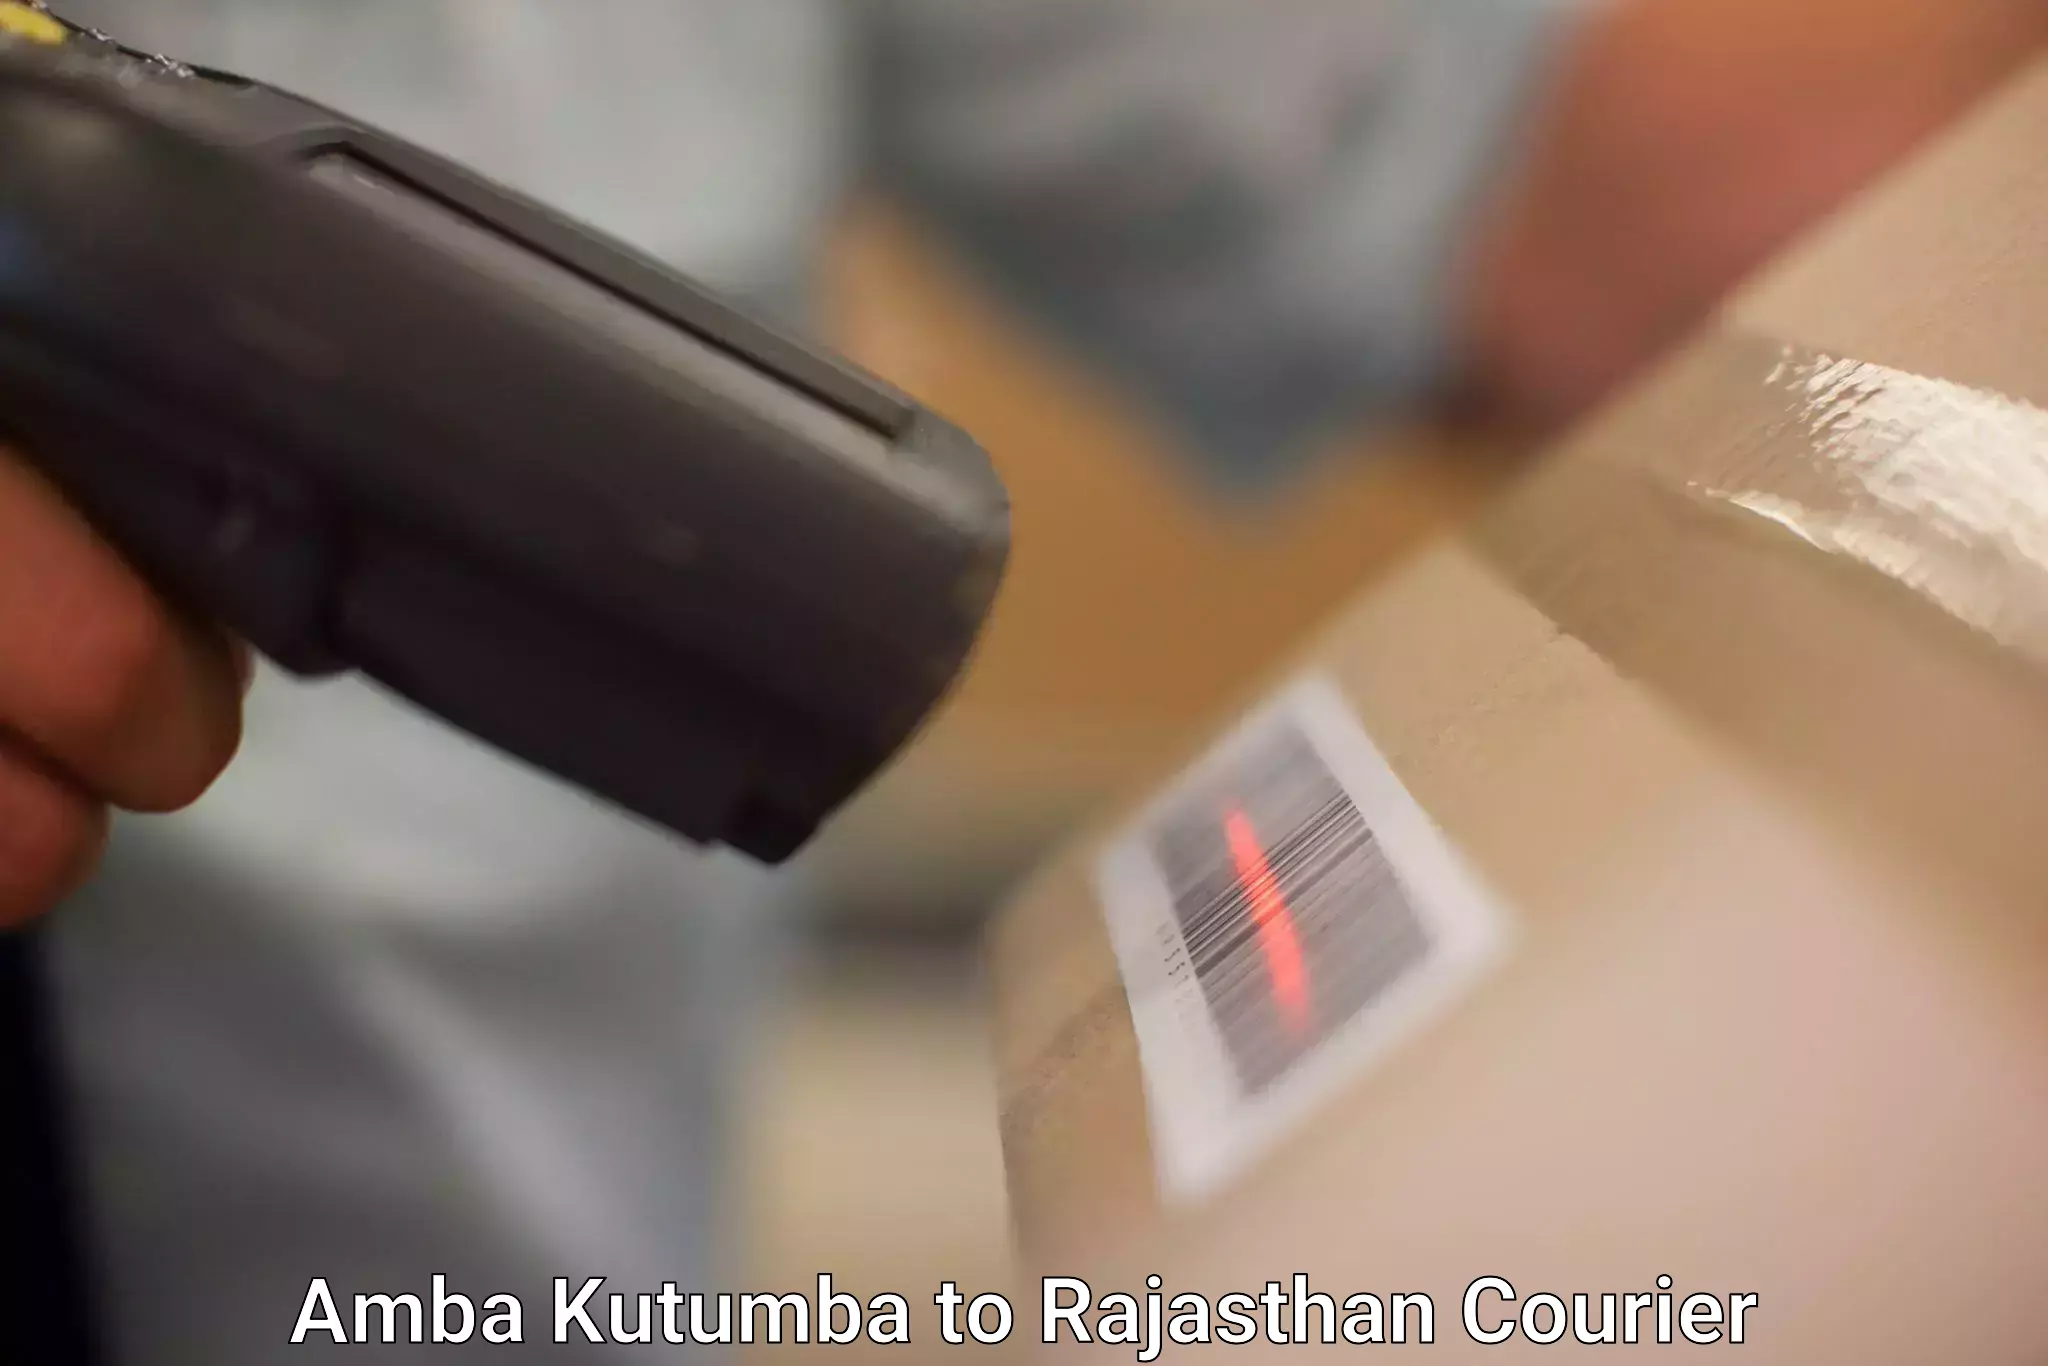 State-of-the-art courier technology Amba Kutumba to Deenwa